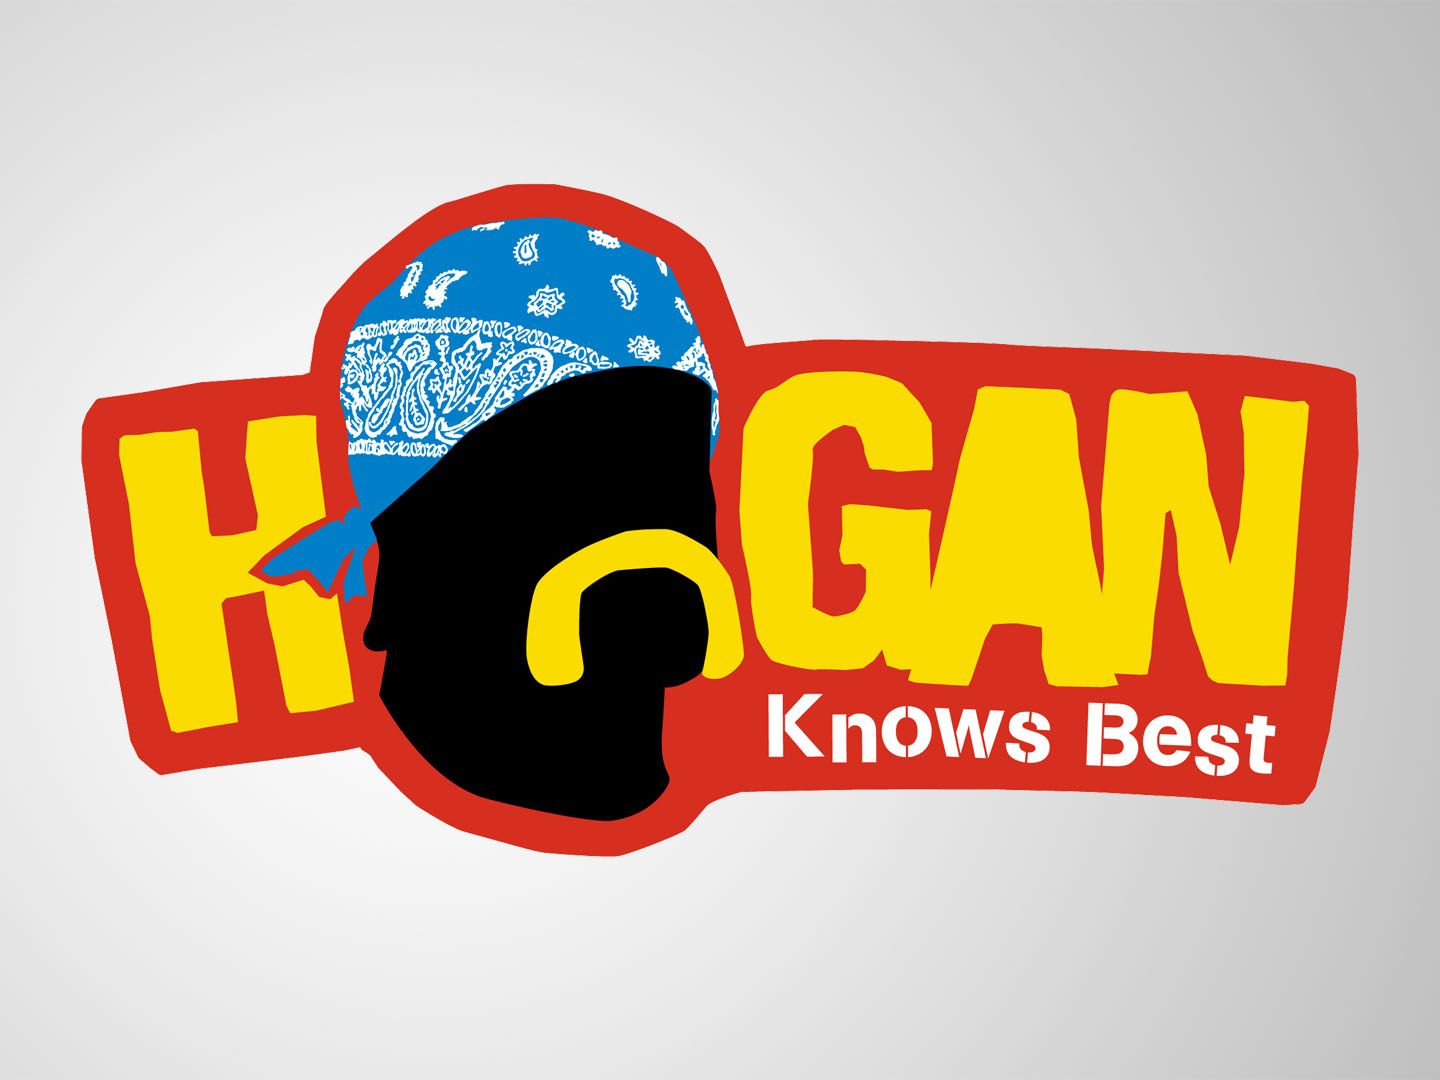 Hogan Knows Best logo